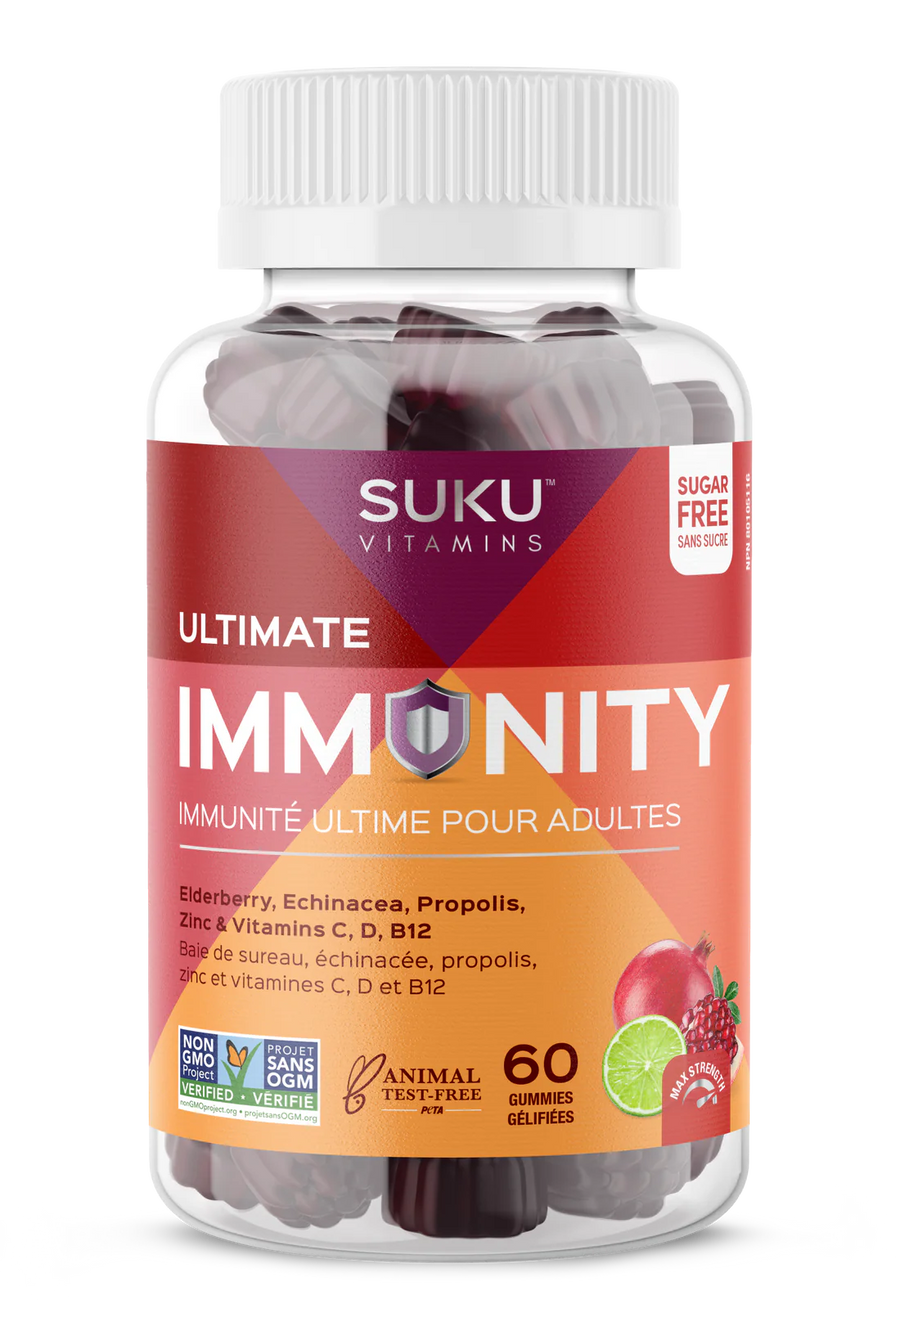 Suku Vitamins Ultimate Immunity Pomegranate Lime Flavour 60 Gummies